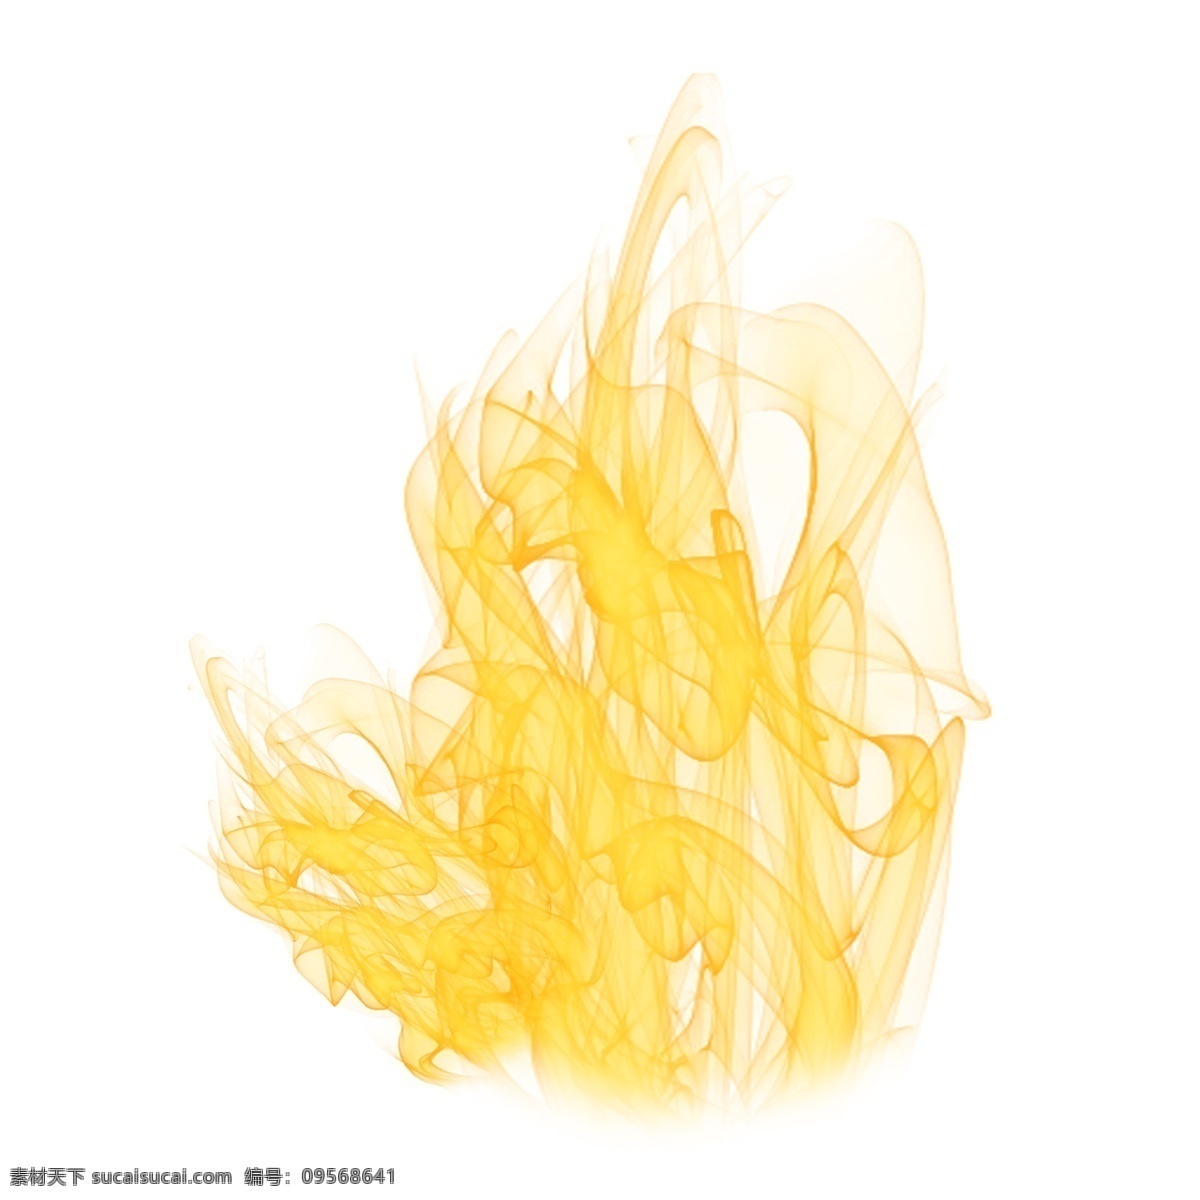 燃烧 烈焰 火苗 元素 黄色 火焰 烈火 火 火焰矢量 跳动的火焰 艺术火焰 黄色火焰 炫酷